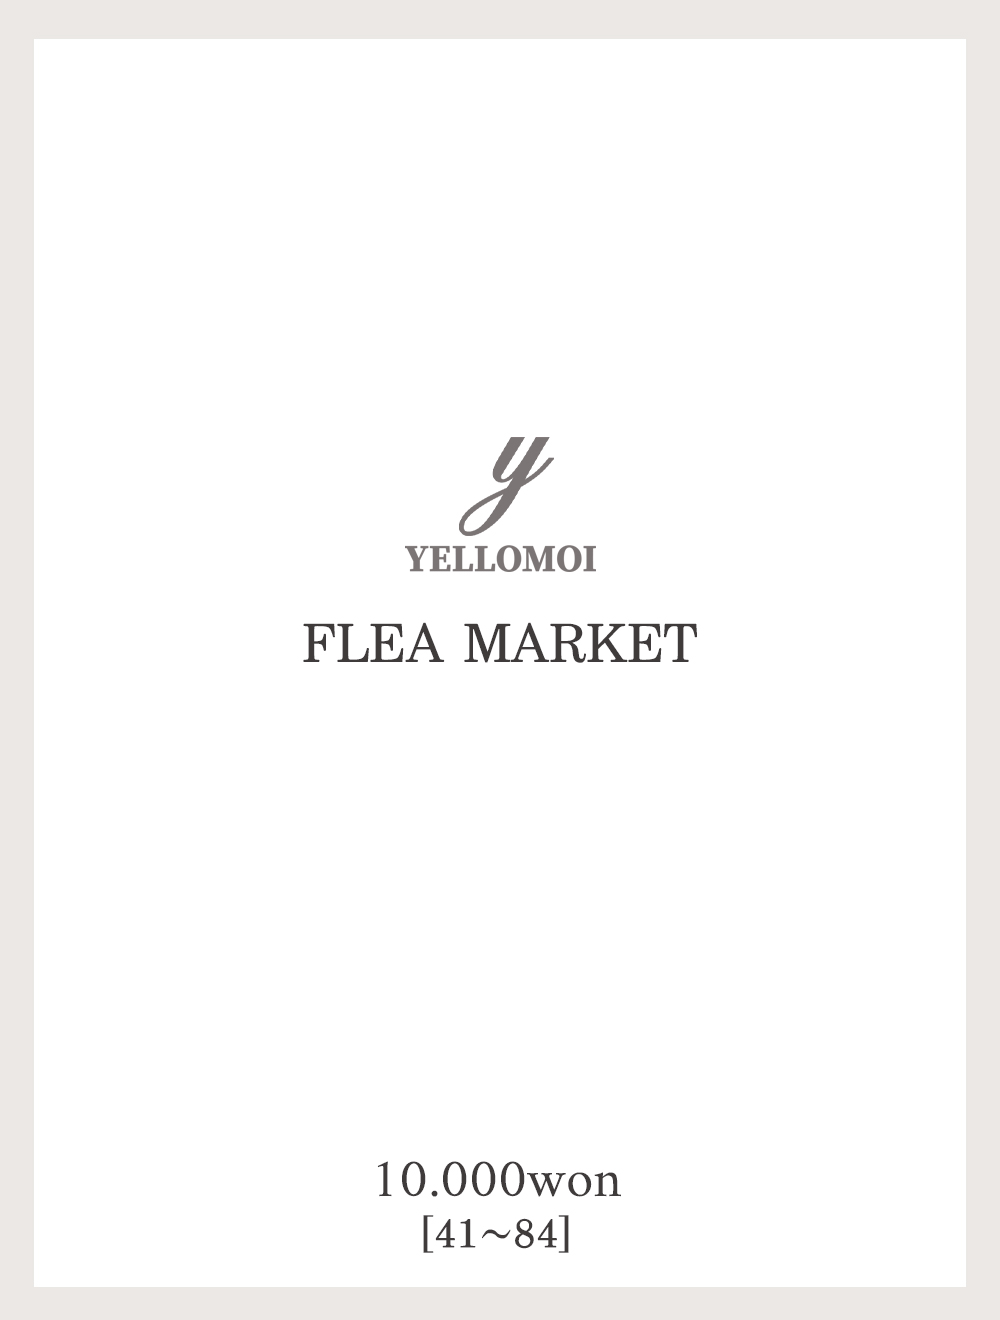 [YELLOMOI]Flea market, 1만원(41-84)